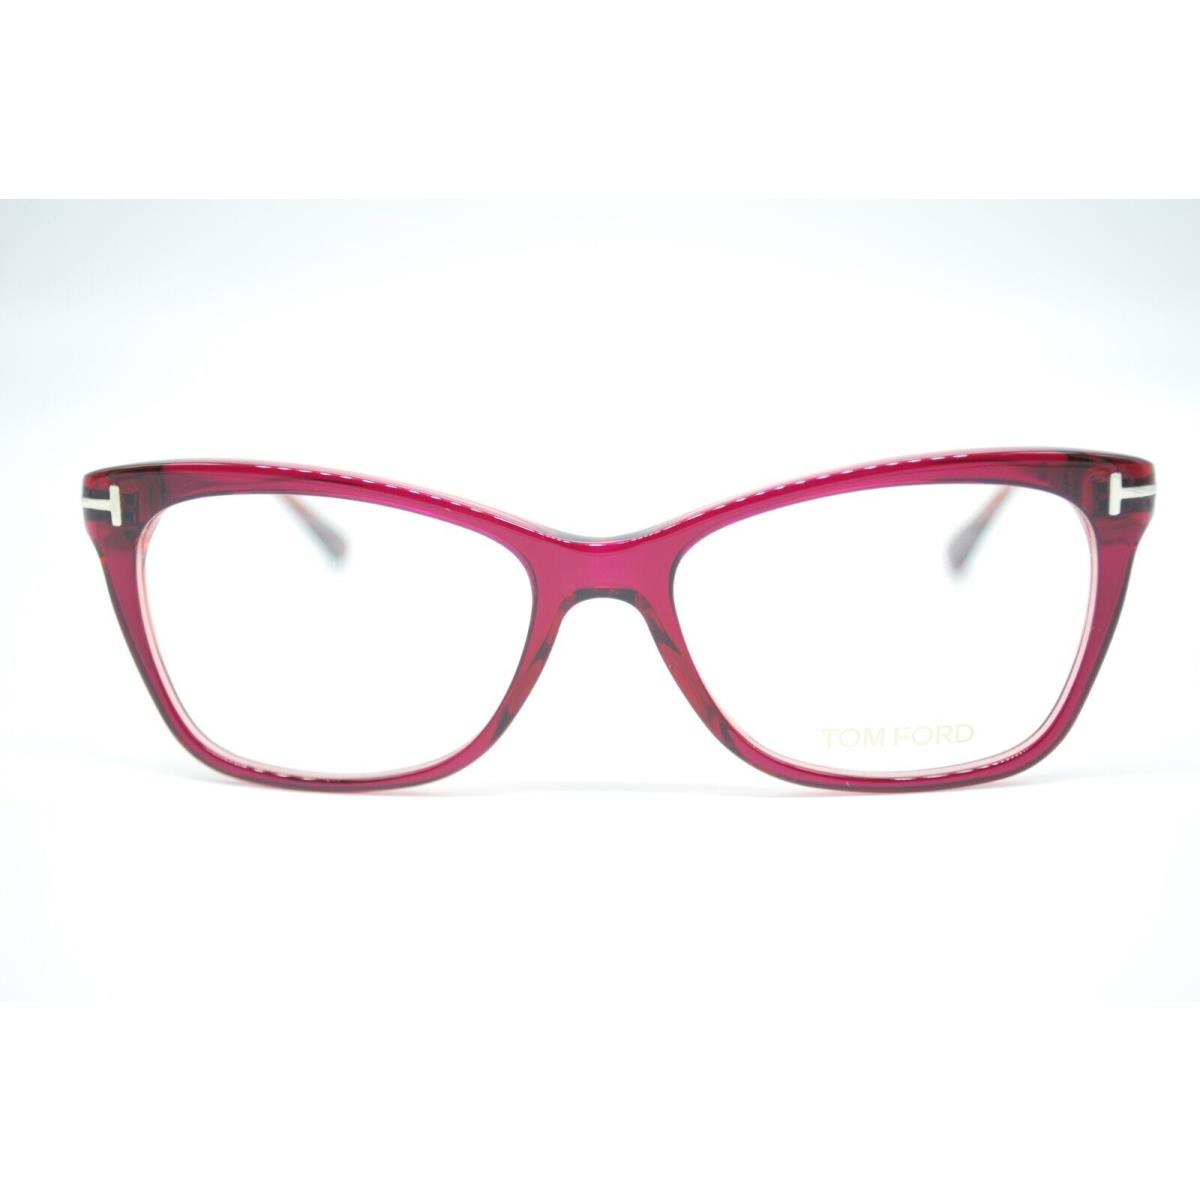 Tom Ford eyeglasses  - Frame: Red 1